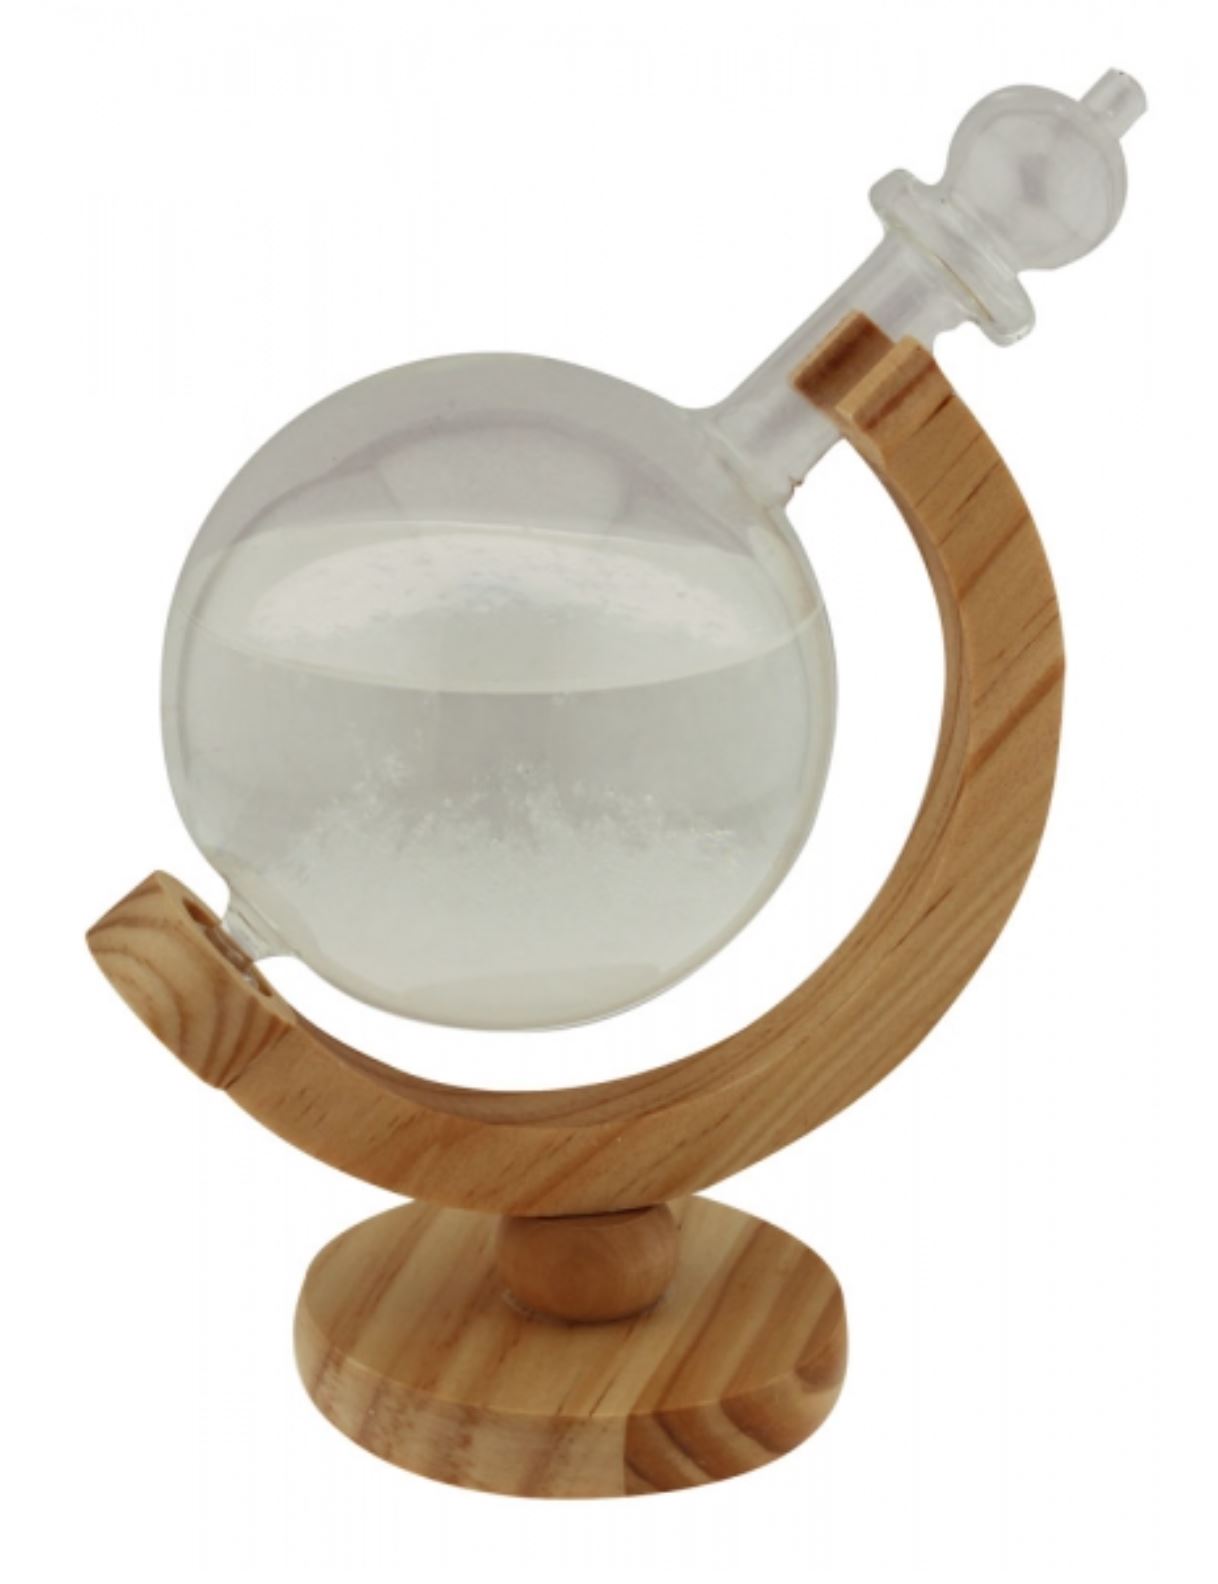 SEA CLUB Bouřková sklenička - Stormglas ve tvaru koule 21,5 cm 5974